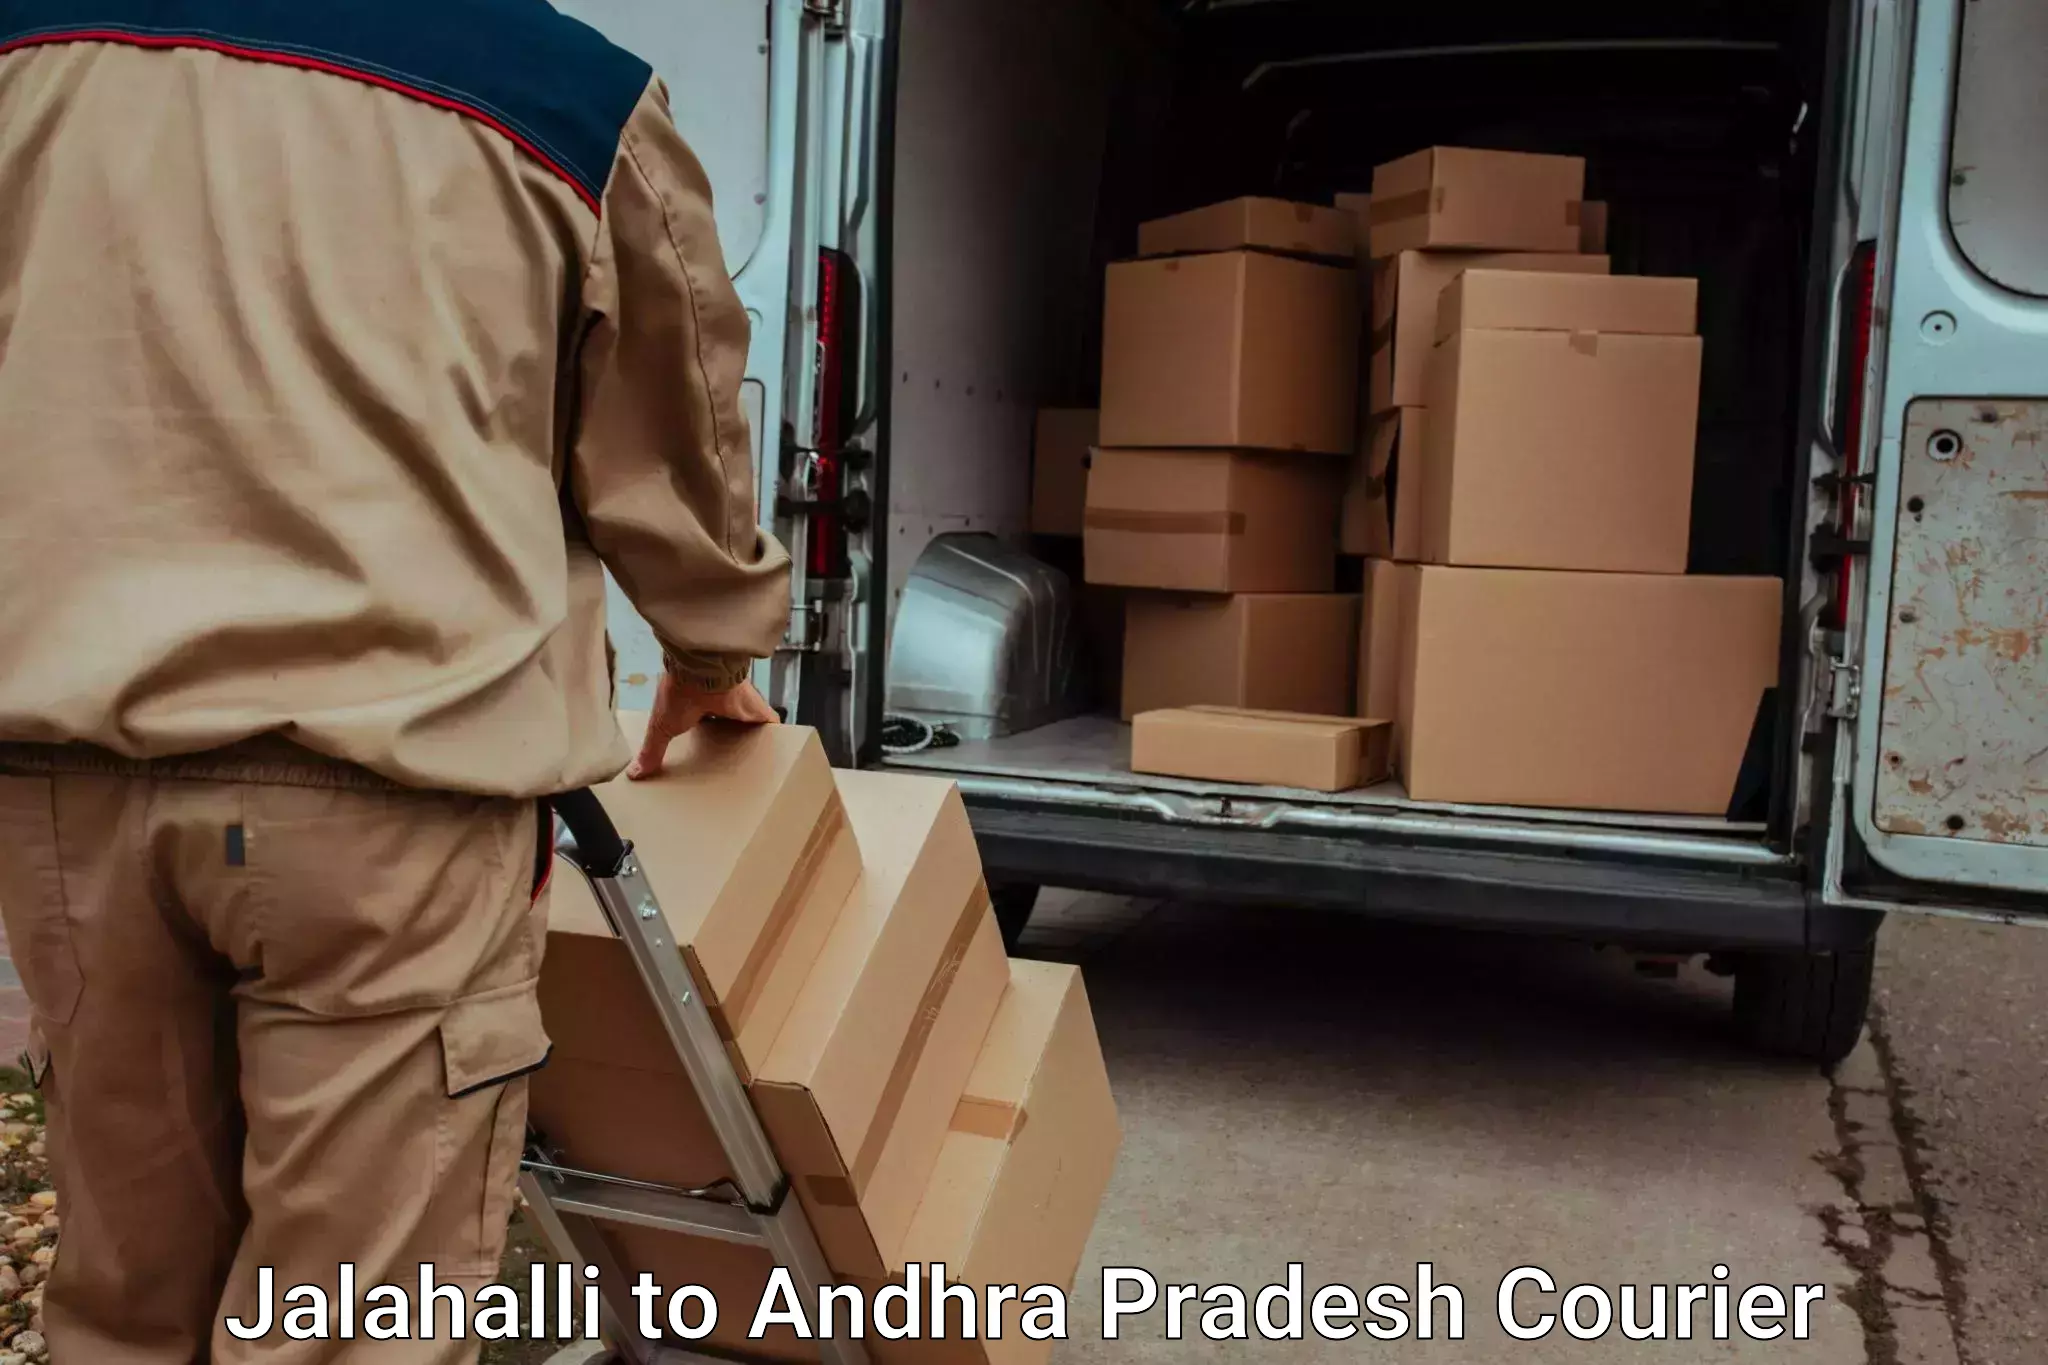 Door-to-door baggage service Jalahalli to Ranastalam